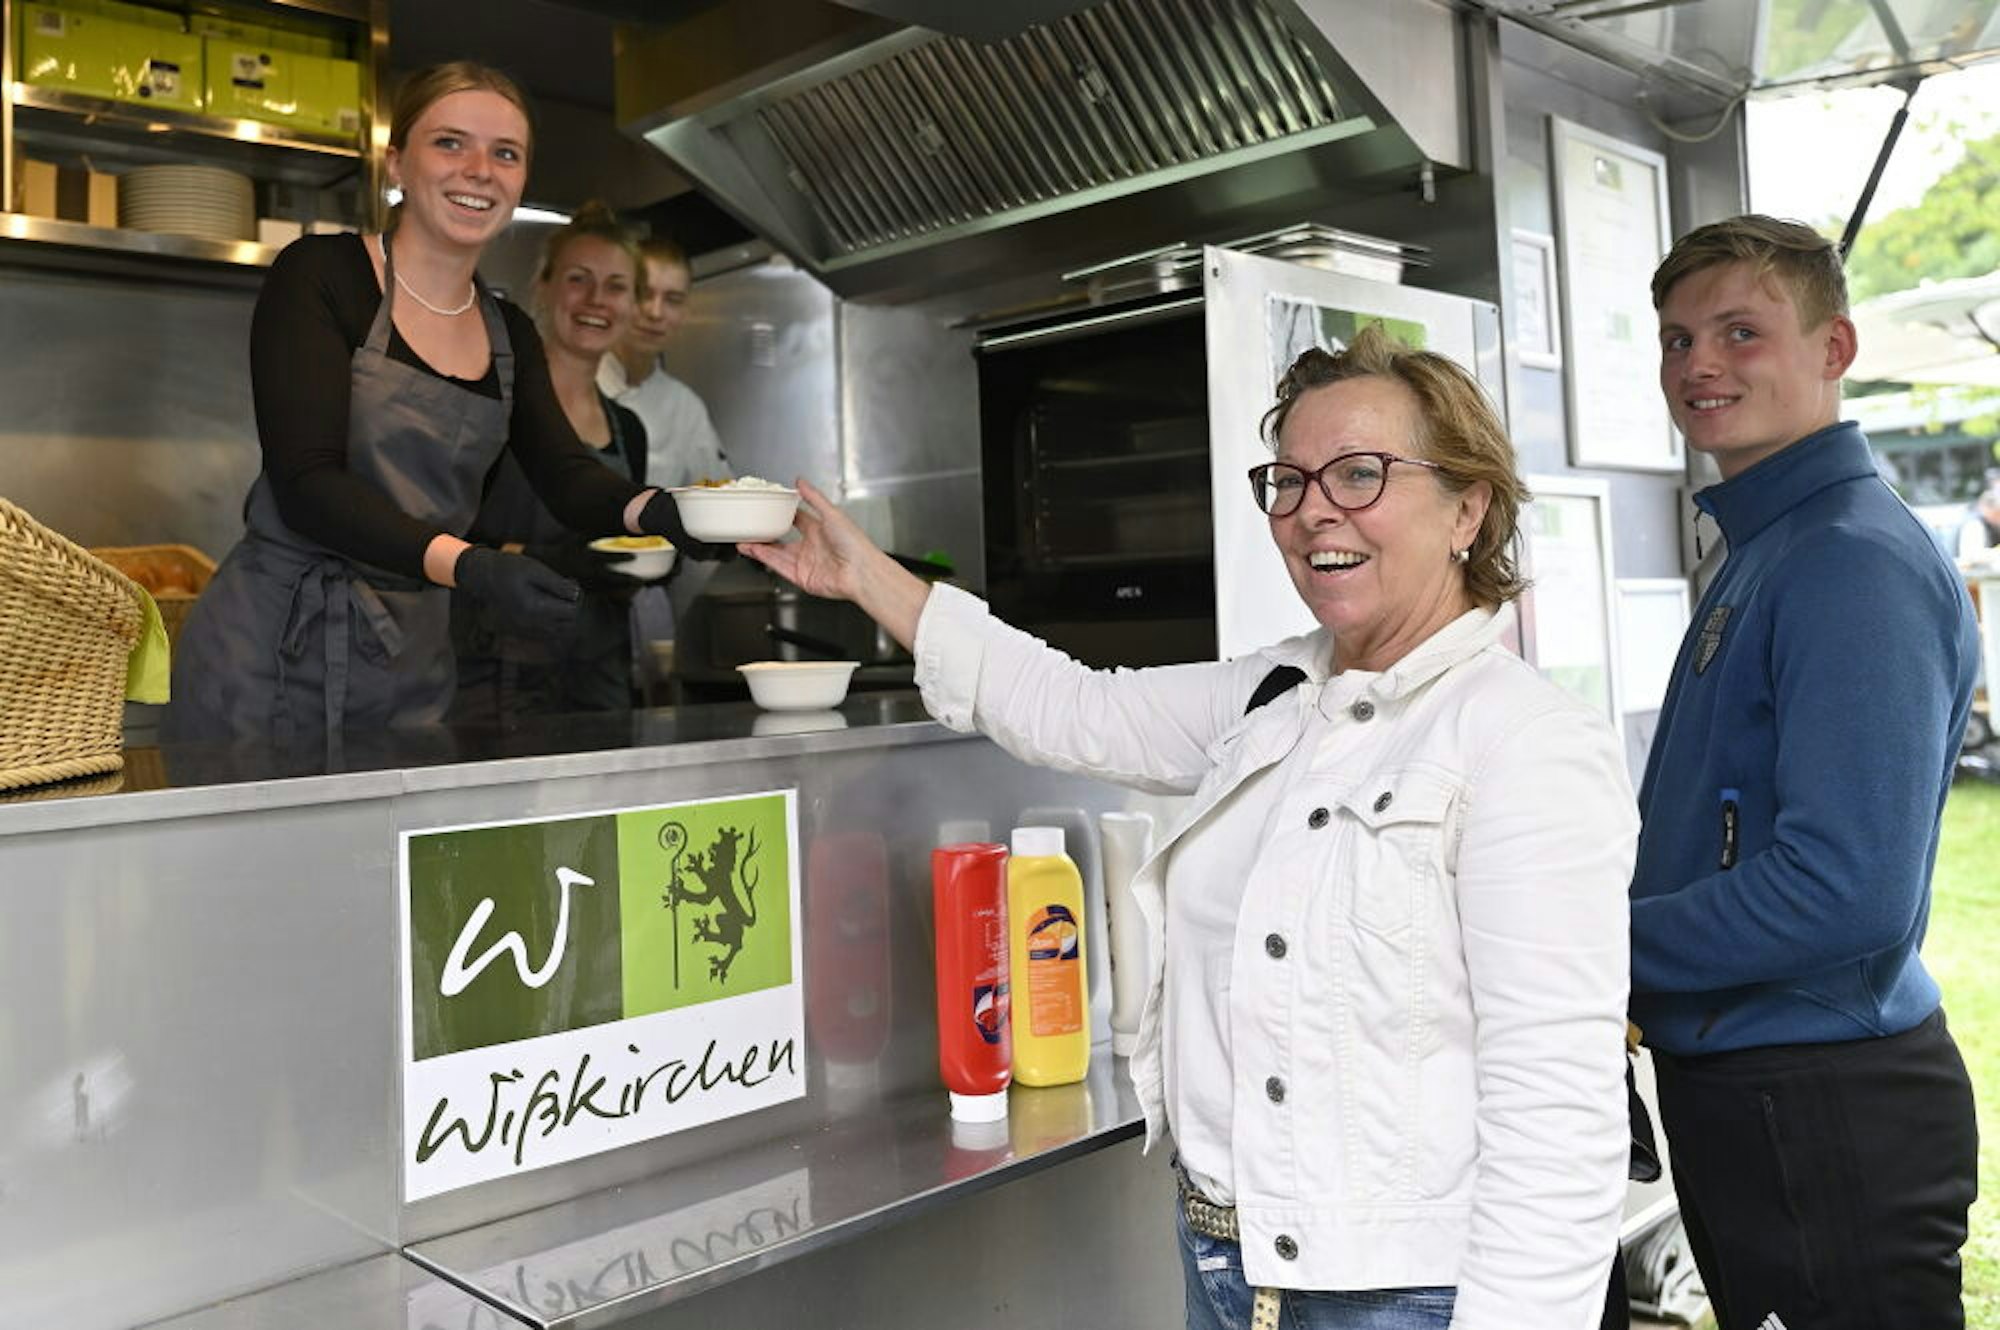 Für die Verköstigung zwischen den Dressurwettbewerben sorgten Gastronom Markus Wißkirchen (r.u.) und sein Team, unterstützt von den Mitarbeitern des Altenberger Hofs.